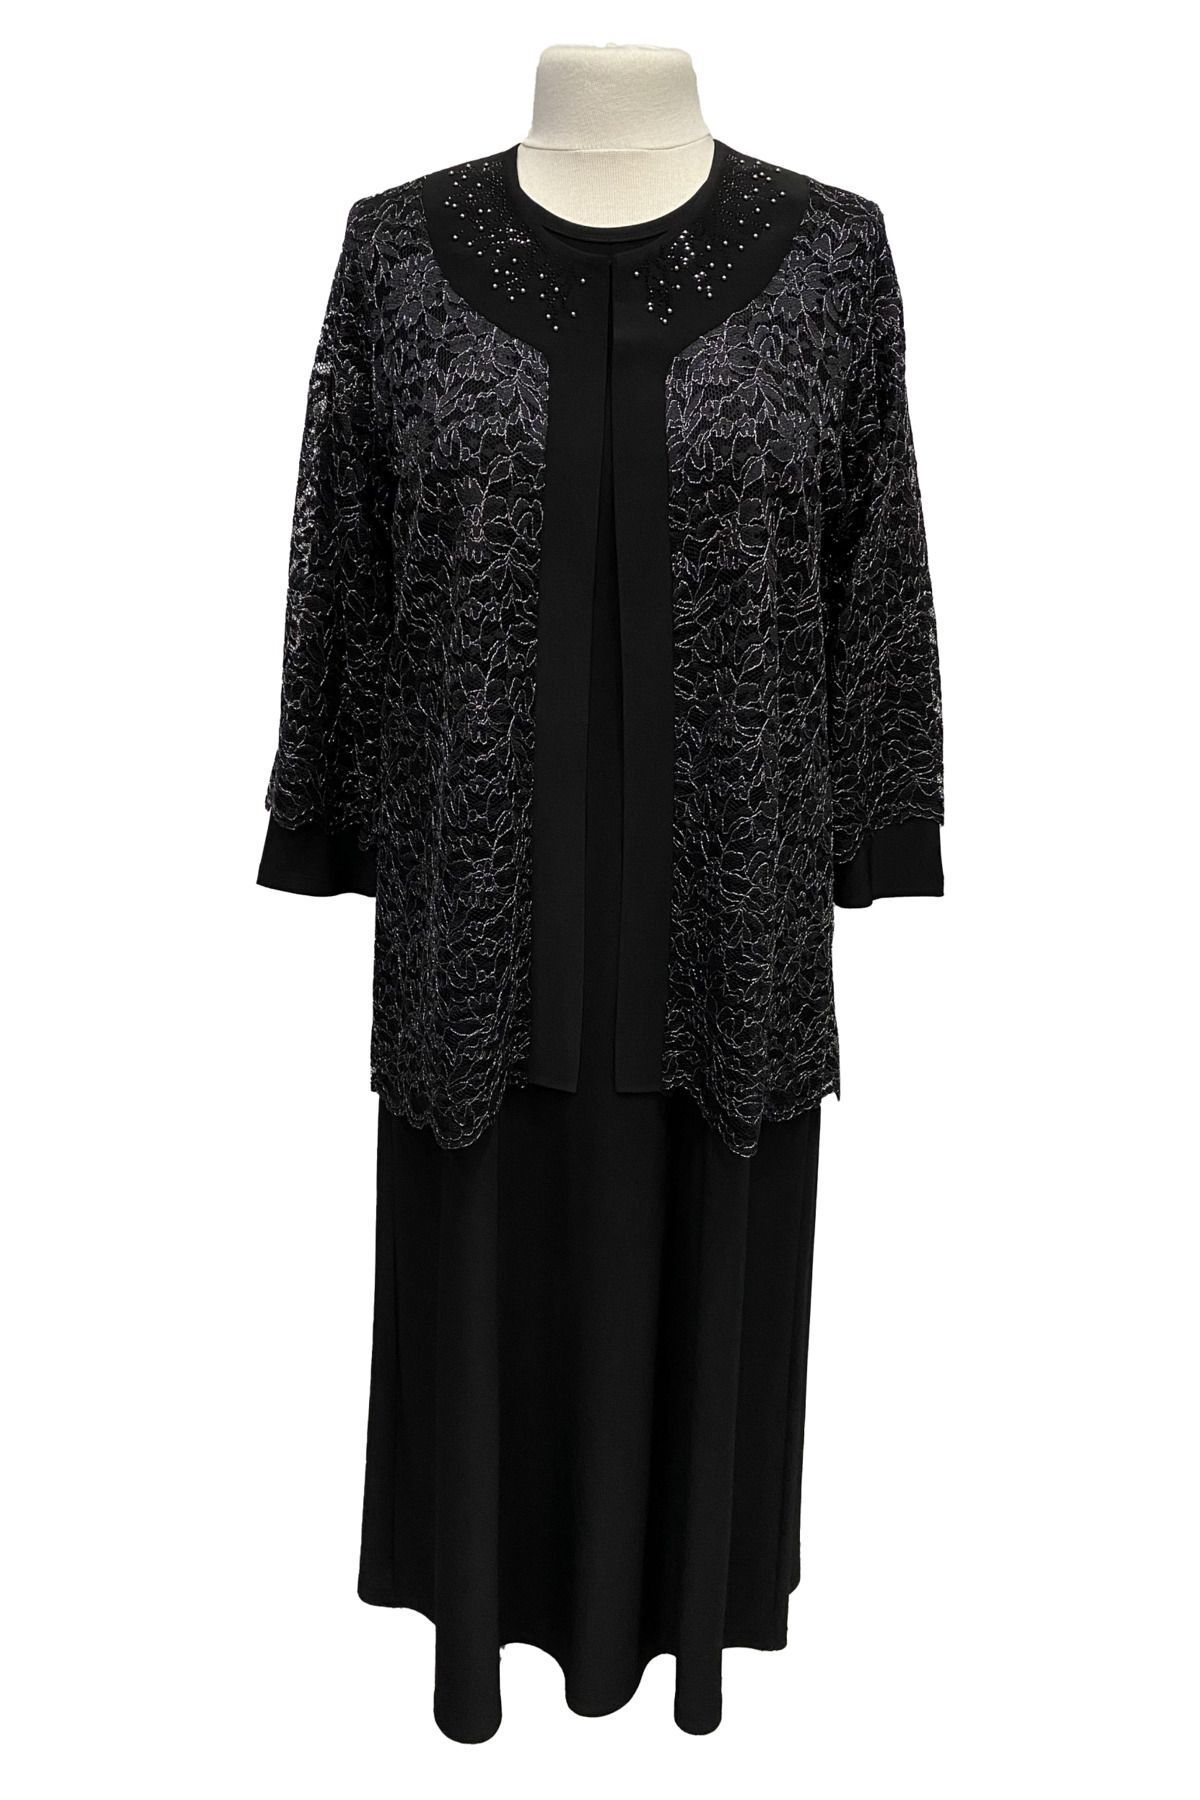 HESNA Siyah Nimet Ceketli Elbise Anne Abiye Takım